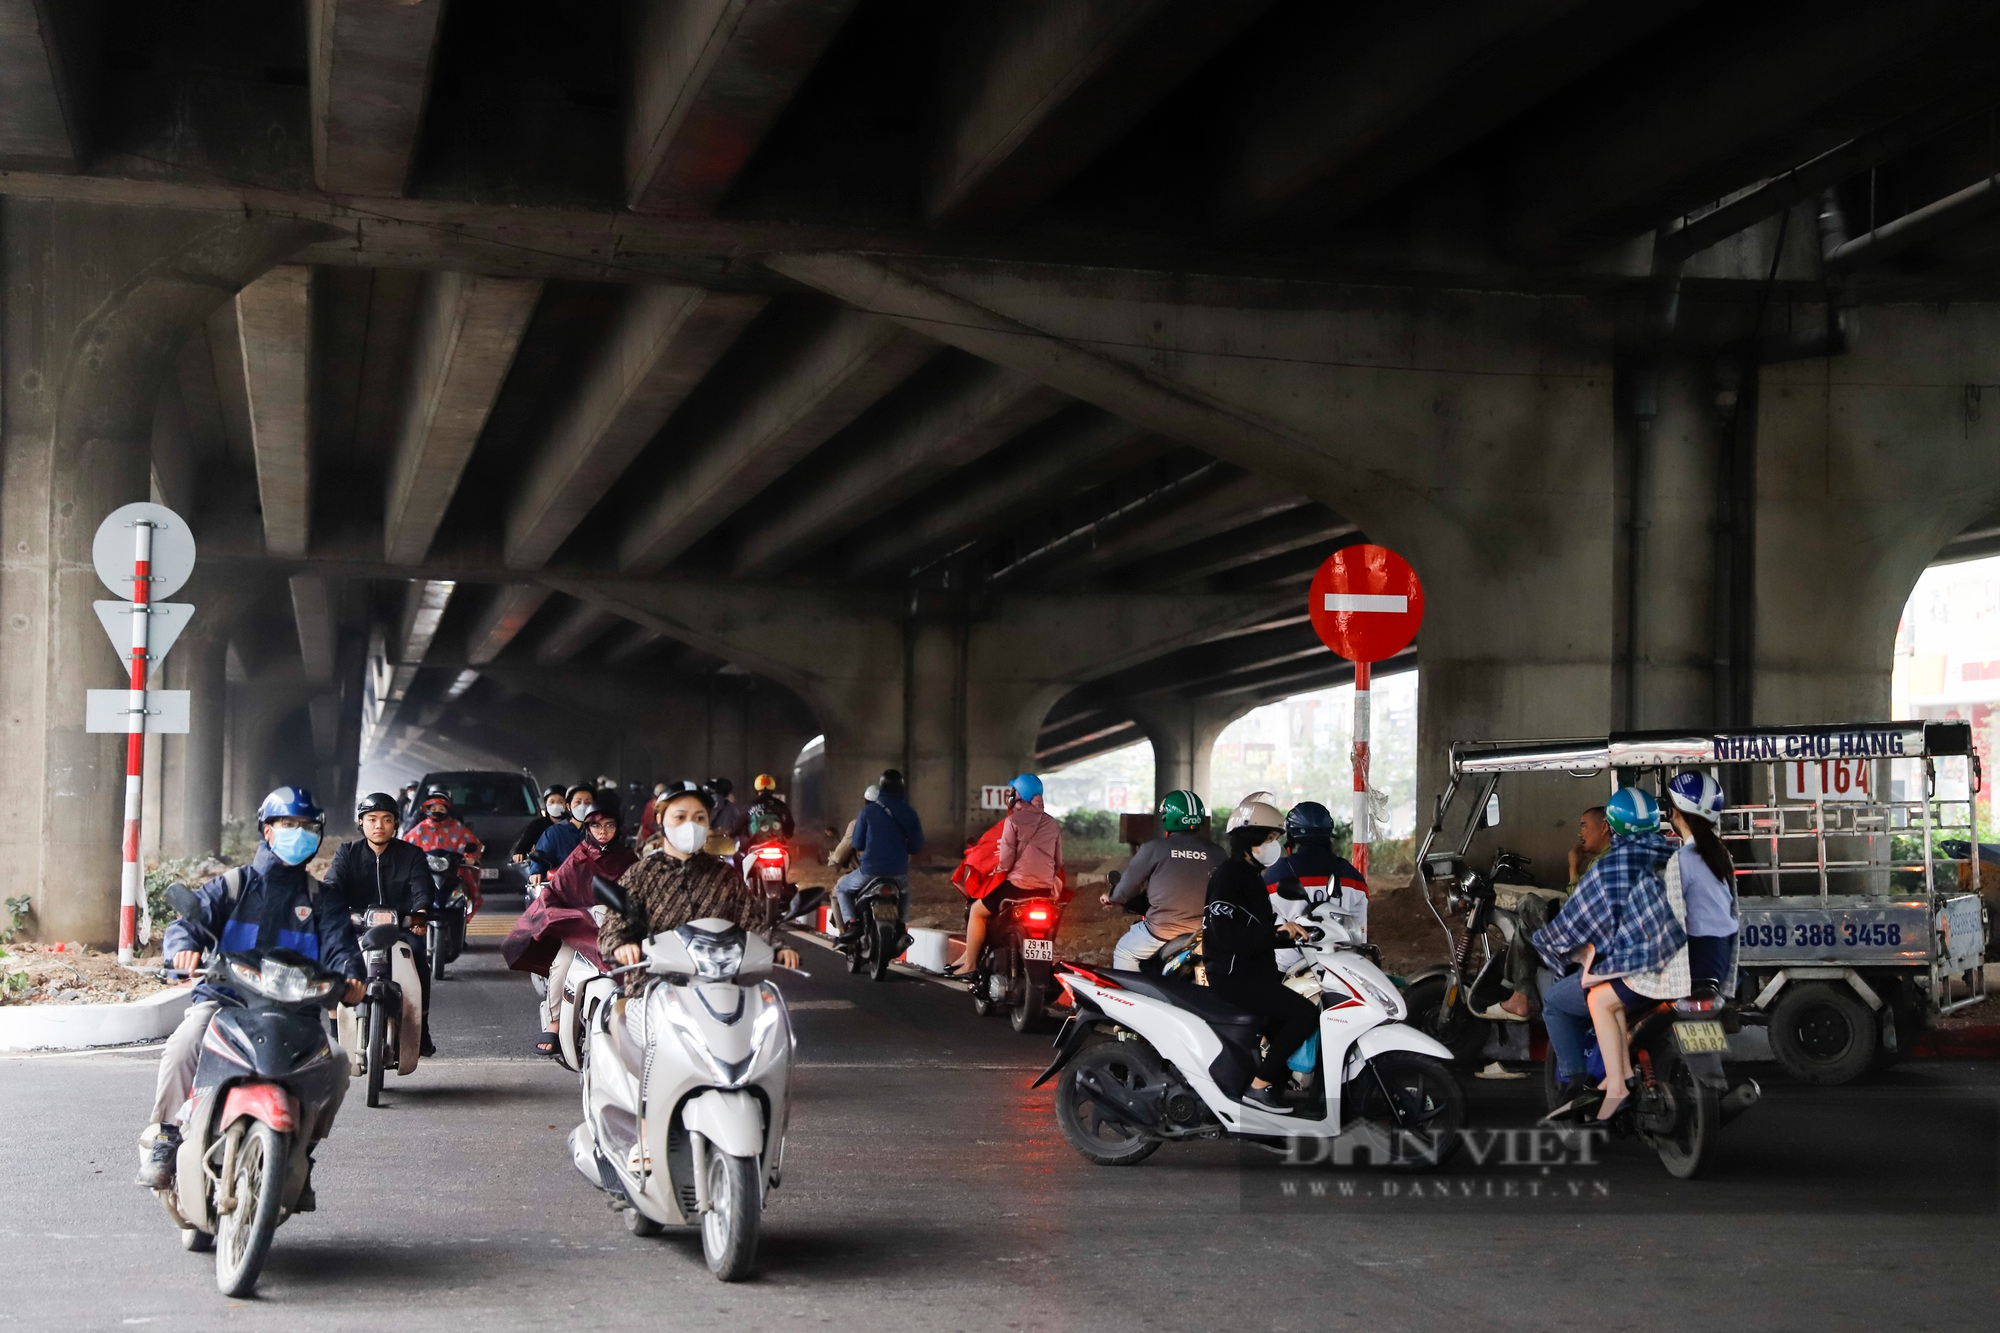 Hàng đoàn xe máy ùn ùn đi ngược chiều tại đoạn đường mới mở tại Hà Nội - Ảnh 2.